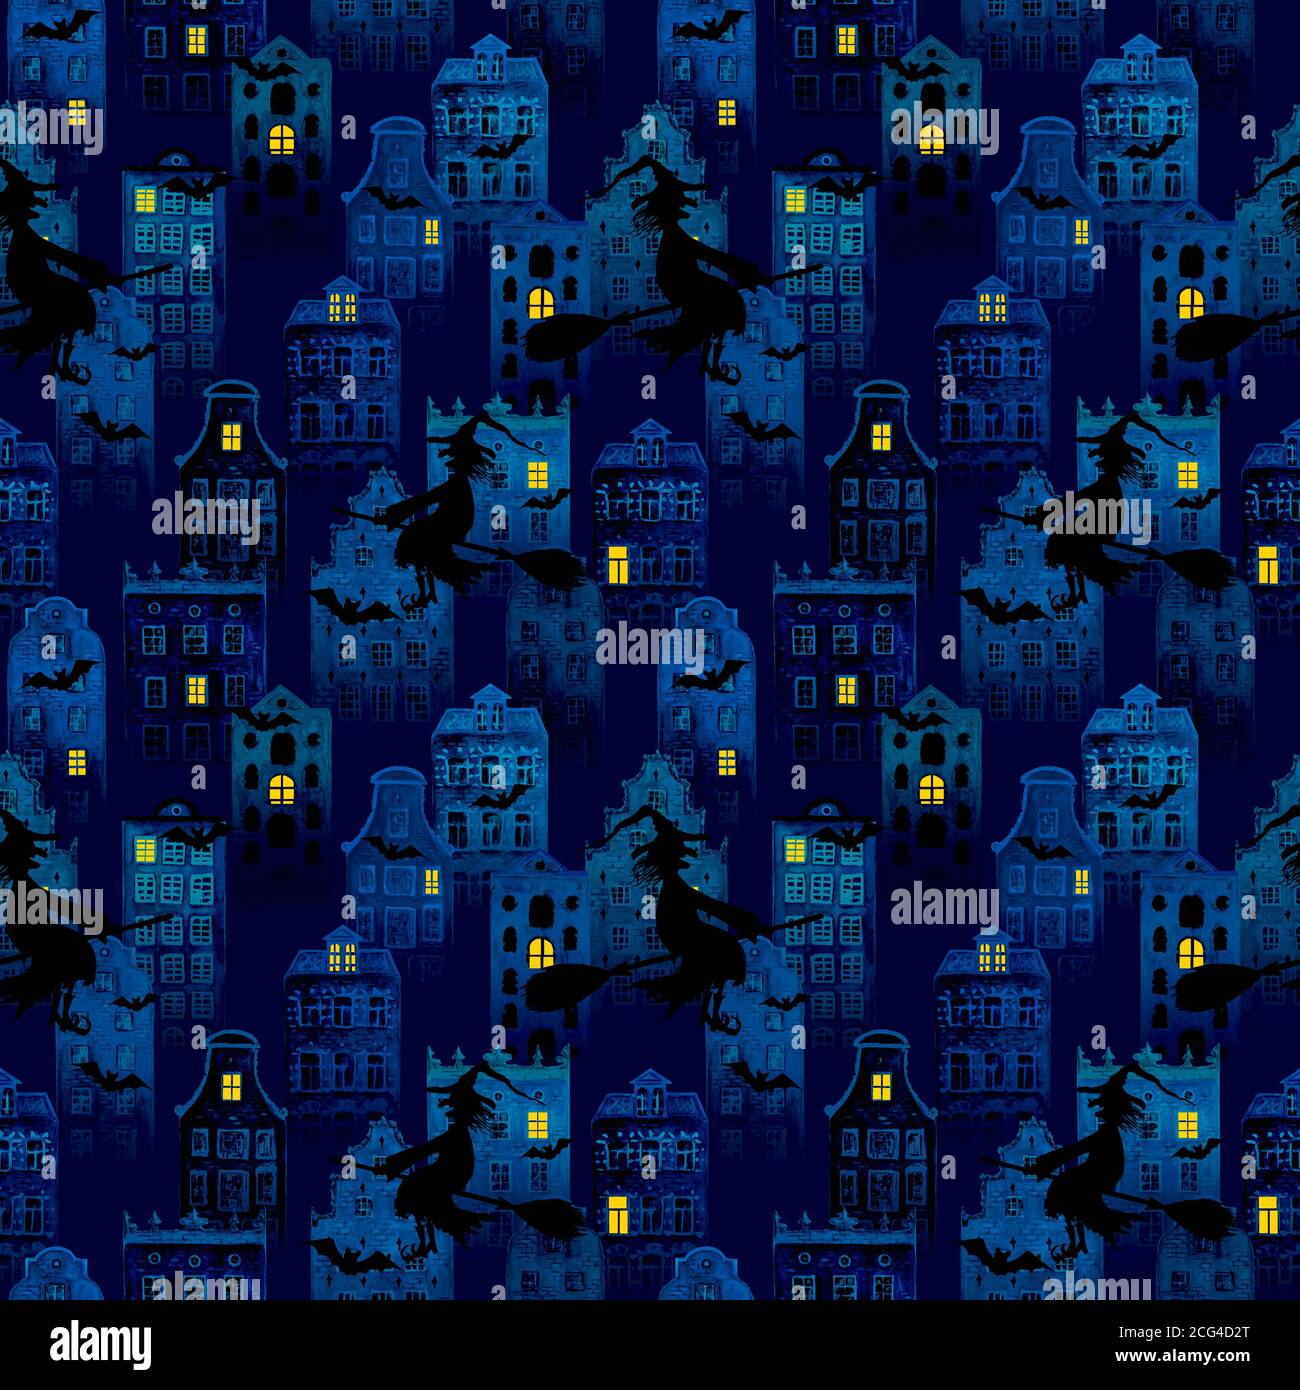 Halloween lila Nacht Stadt Grunge nahtlose Muster mit Aquarell europäischen amsterdam Stil Häuser, schwarze Silhouetten von Hexen fliegen auf Besen, Fledermaus Stockfoto